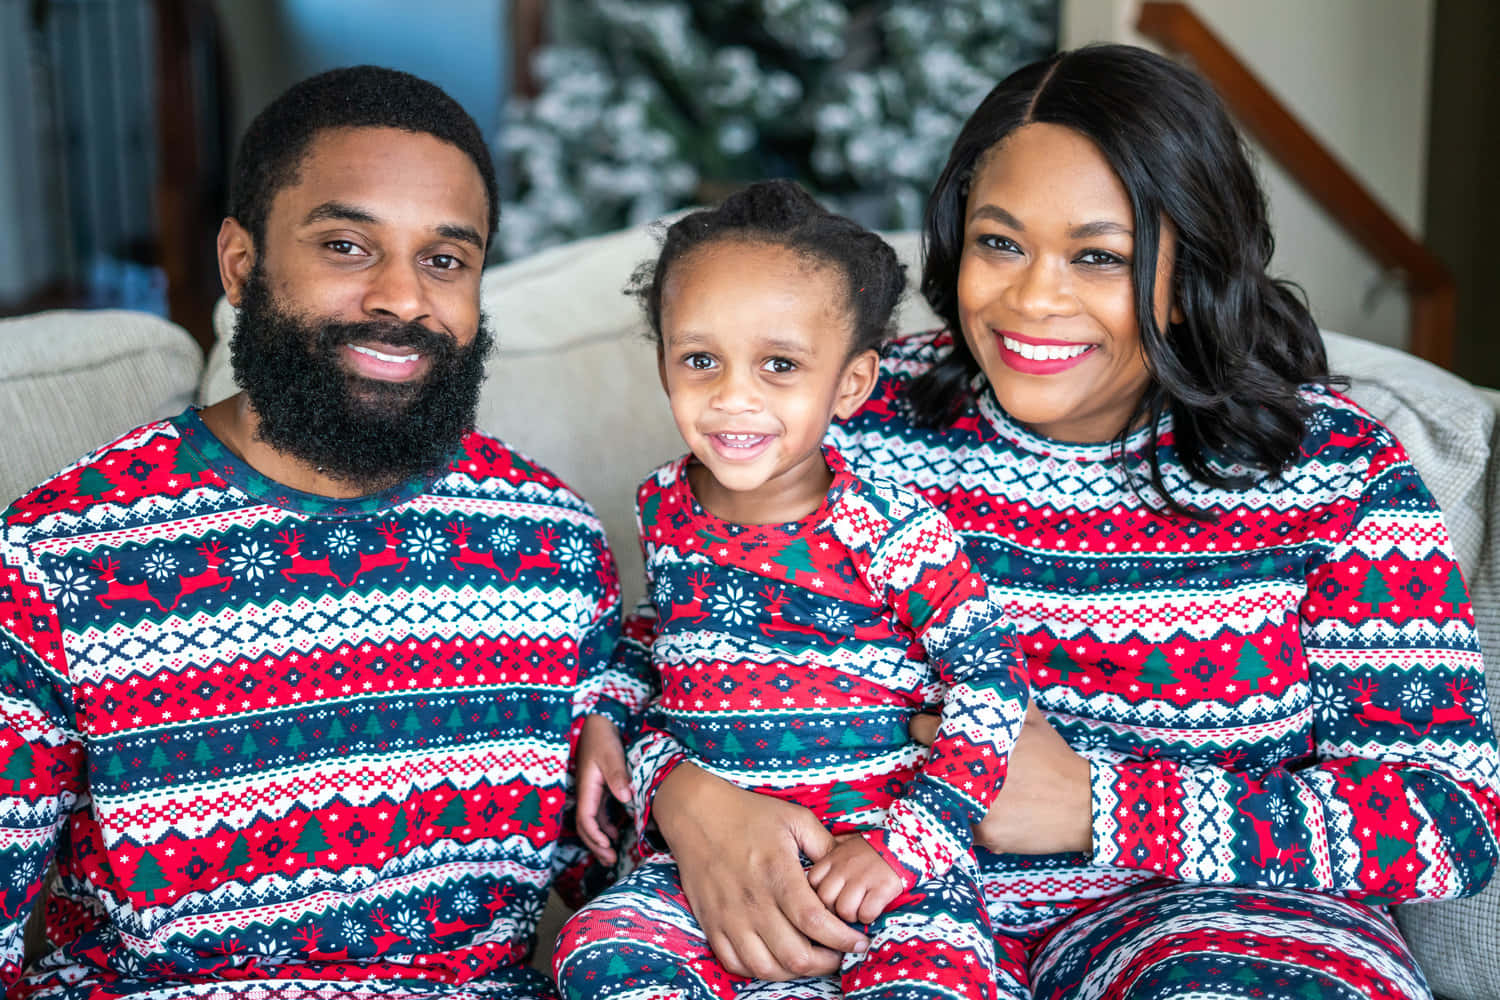 Familienbildzu Weihnachten In Gleichem Schwarzen Outfit